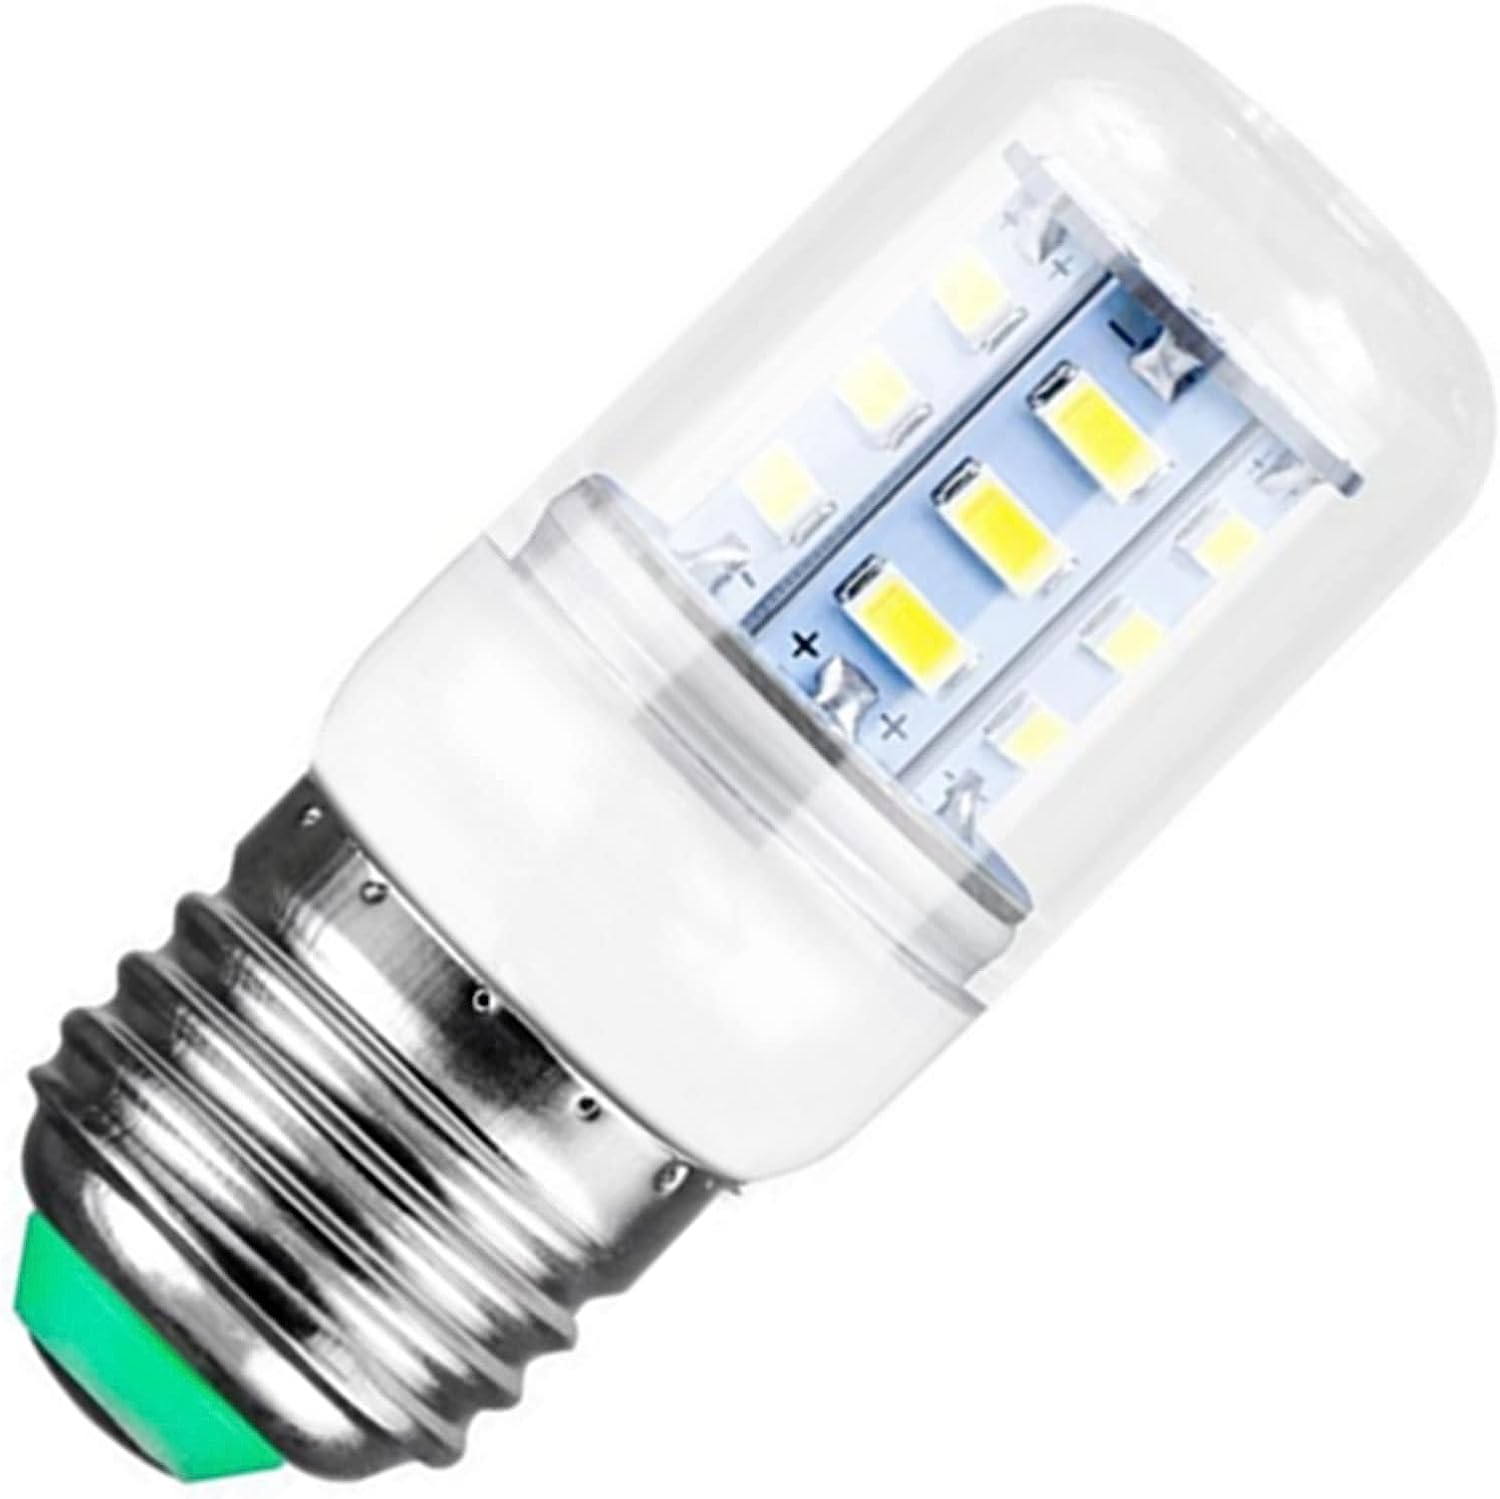 5304511738 - Frigidaire Refrigerator LED Light Bulb